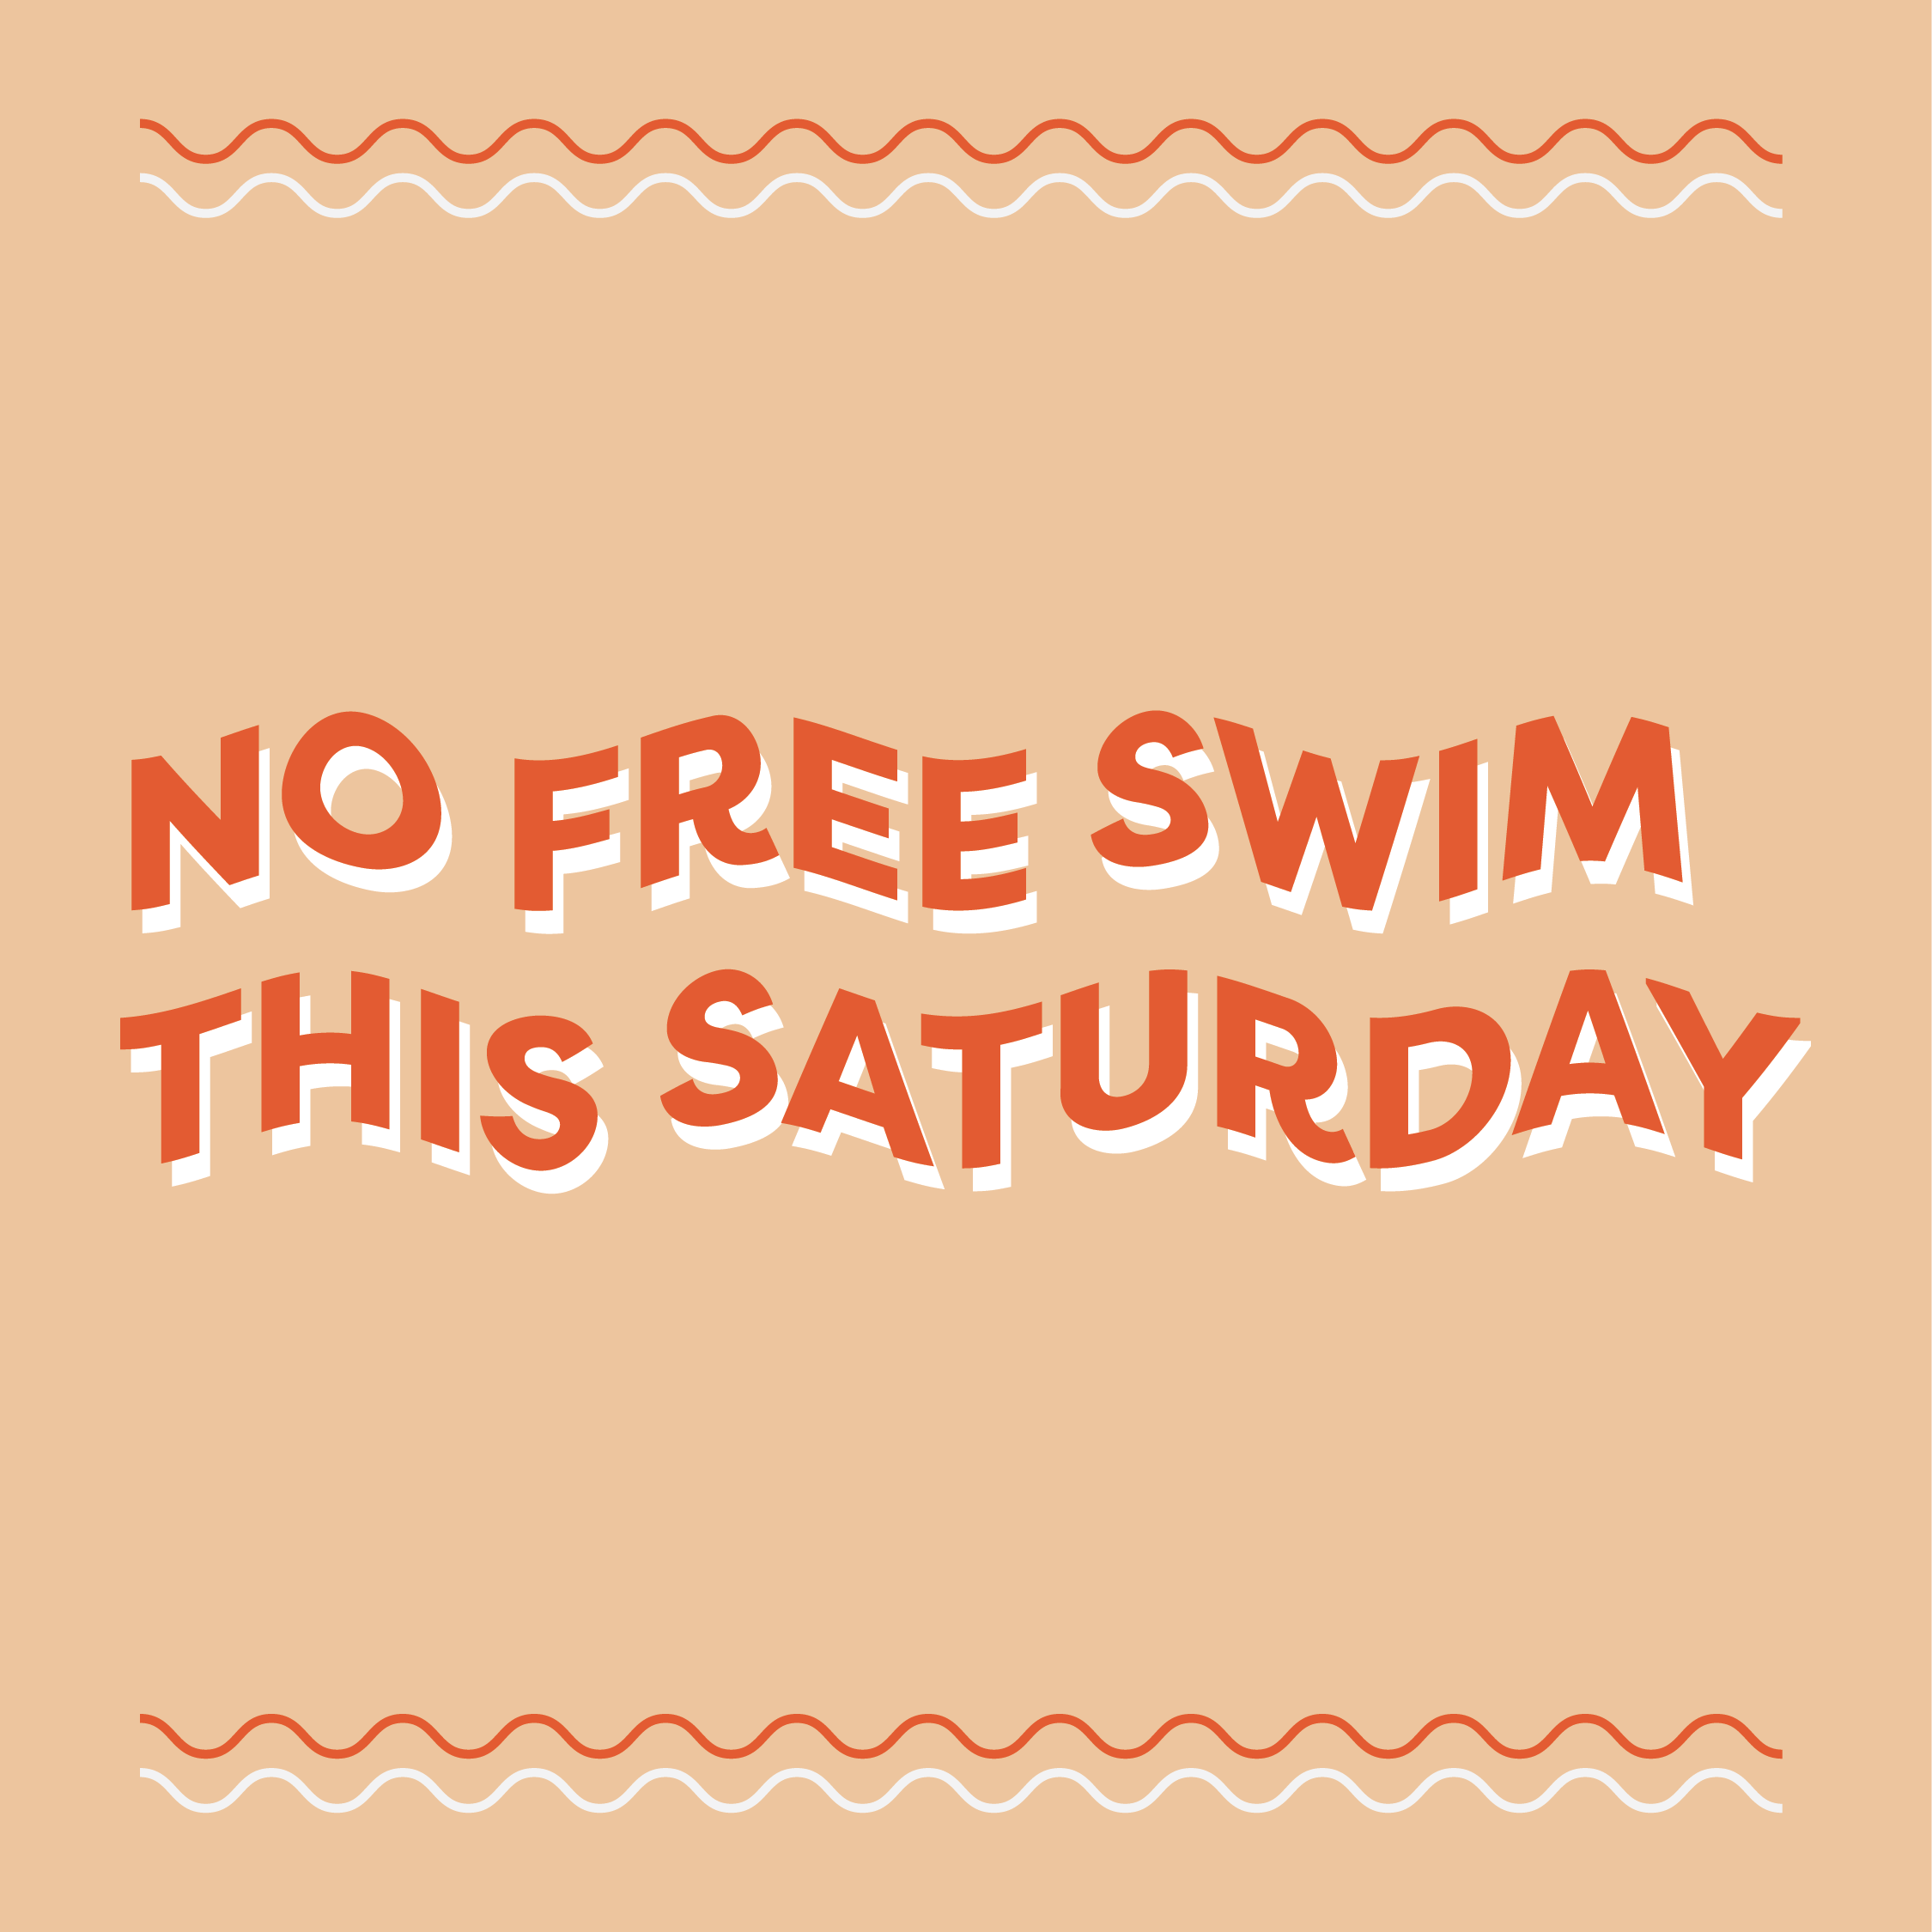 NO FREE SWIM THIS SATURDAY image in orange/red